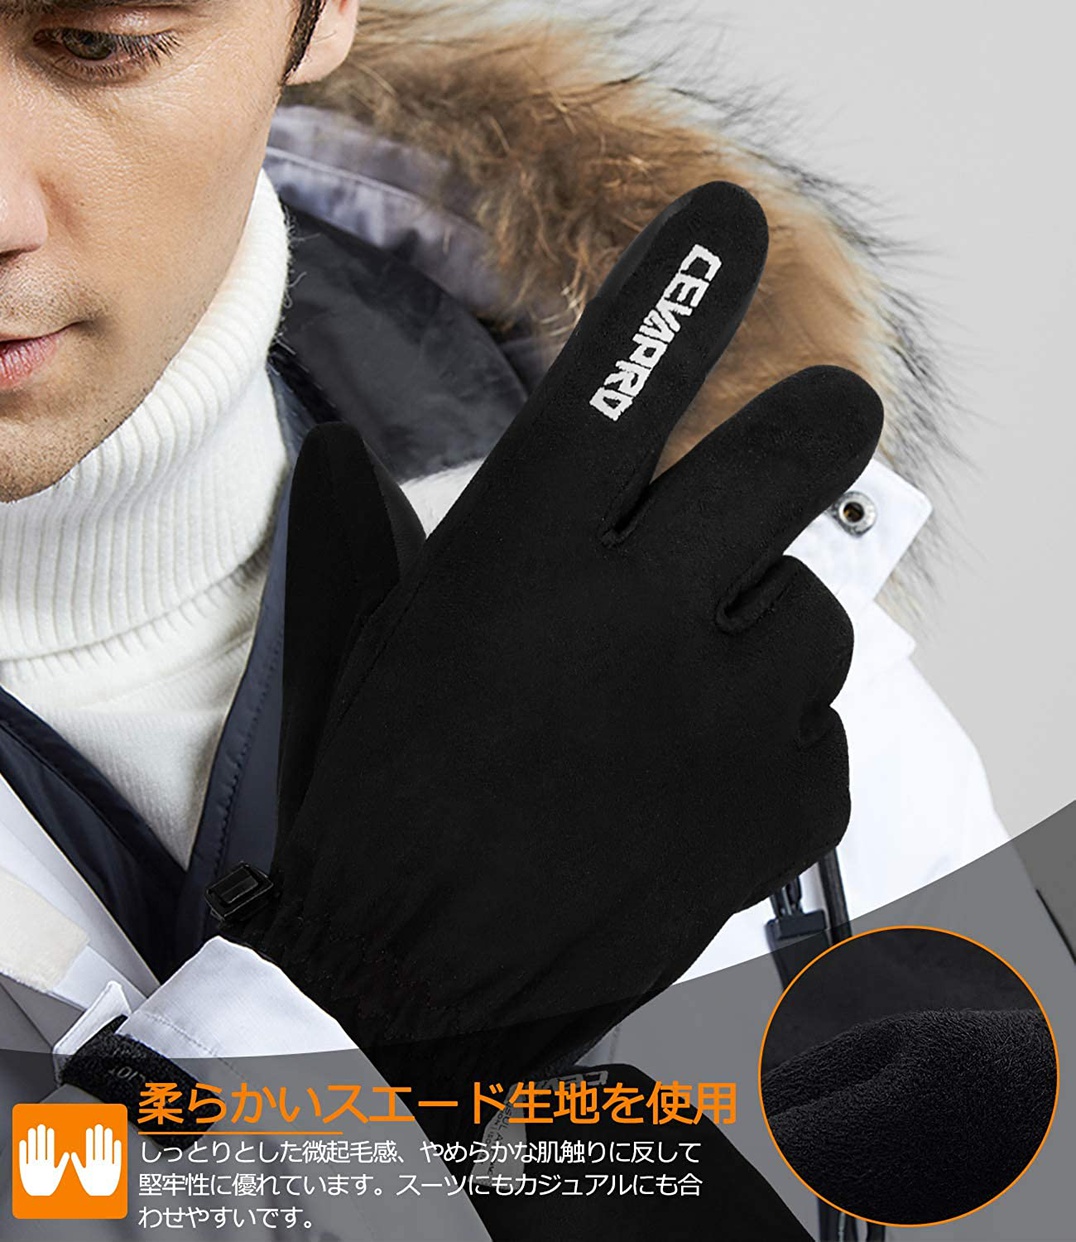 Cevapro(セバプロ) 防寒グローブ CE-B5の商品画像6 